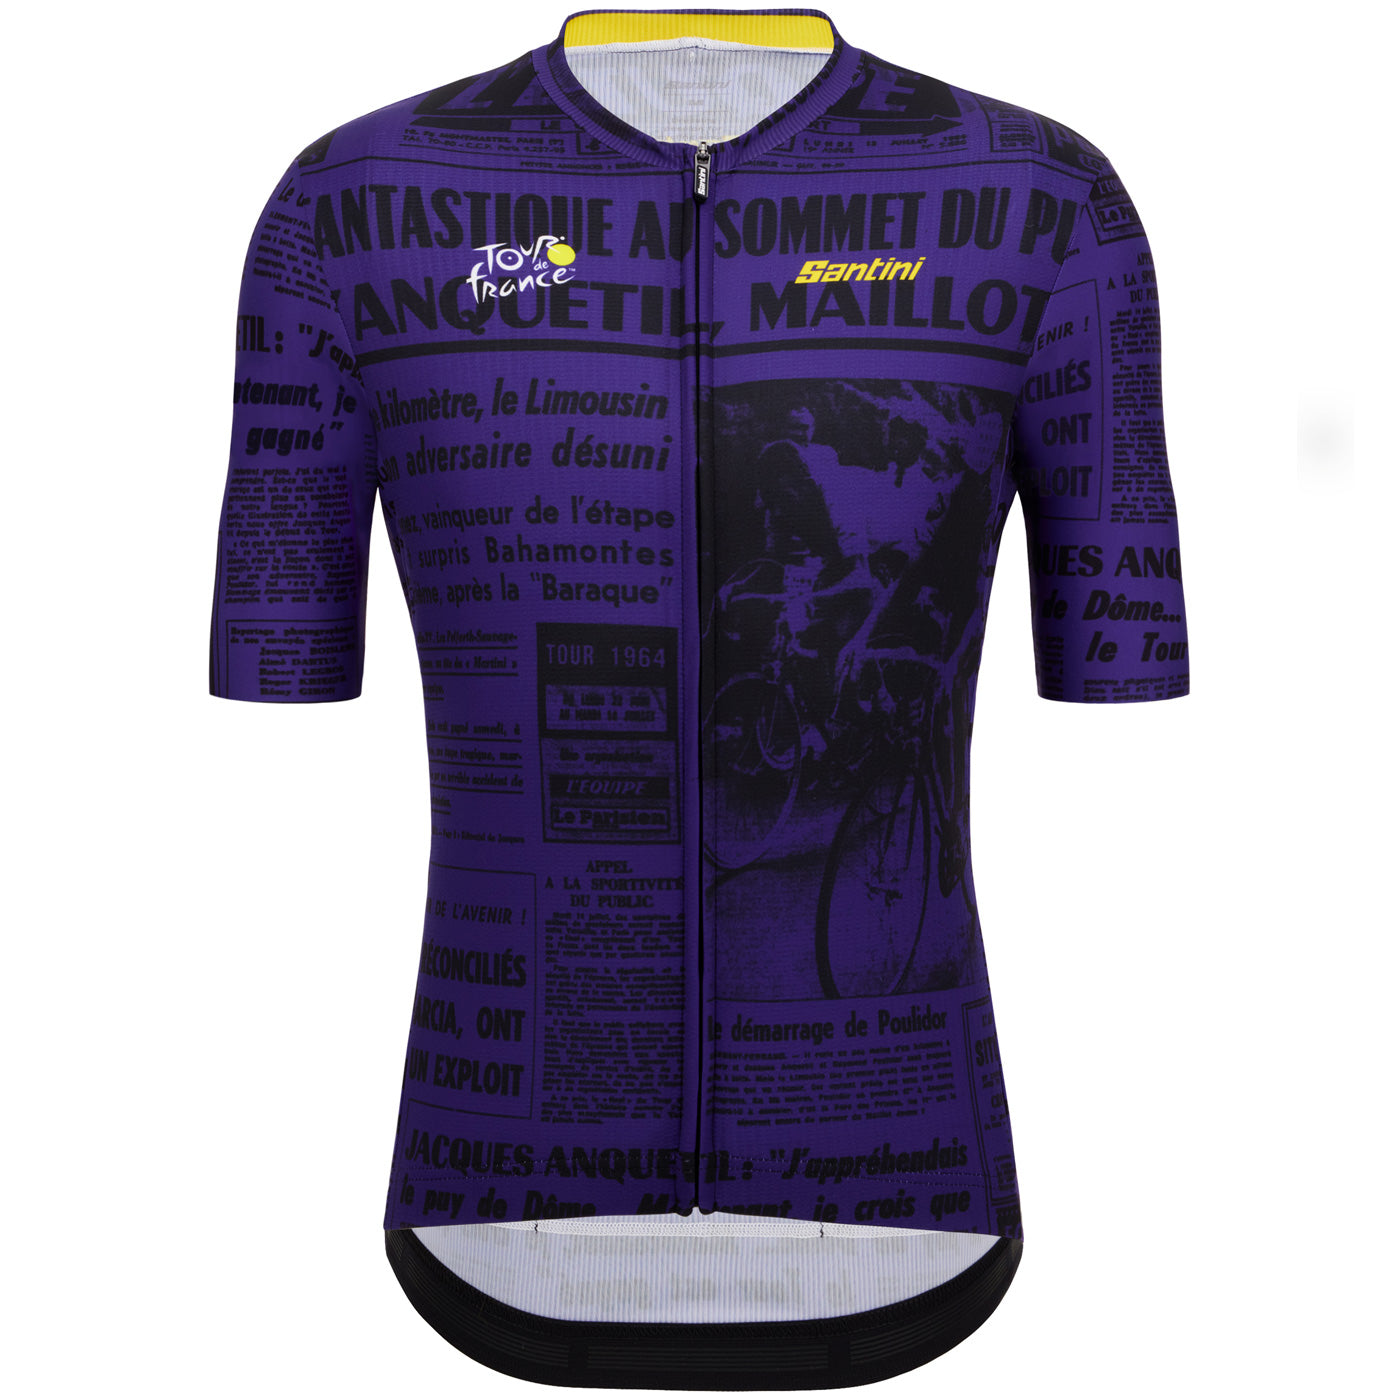 Tour de France jersey - Puy de Dome